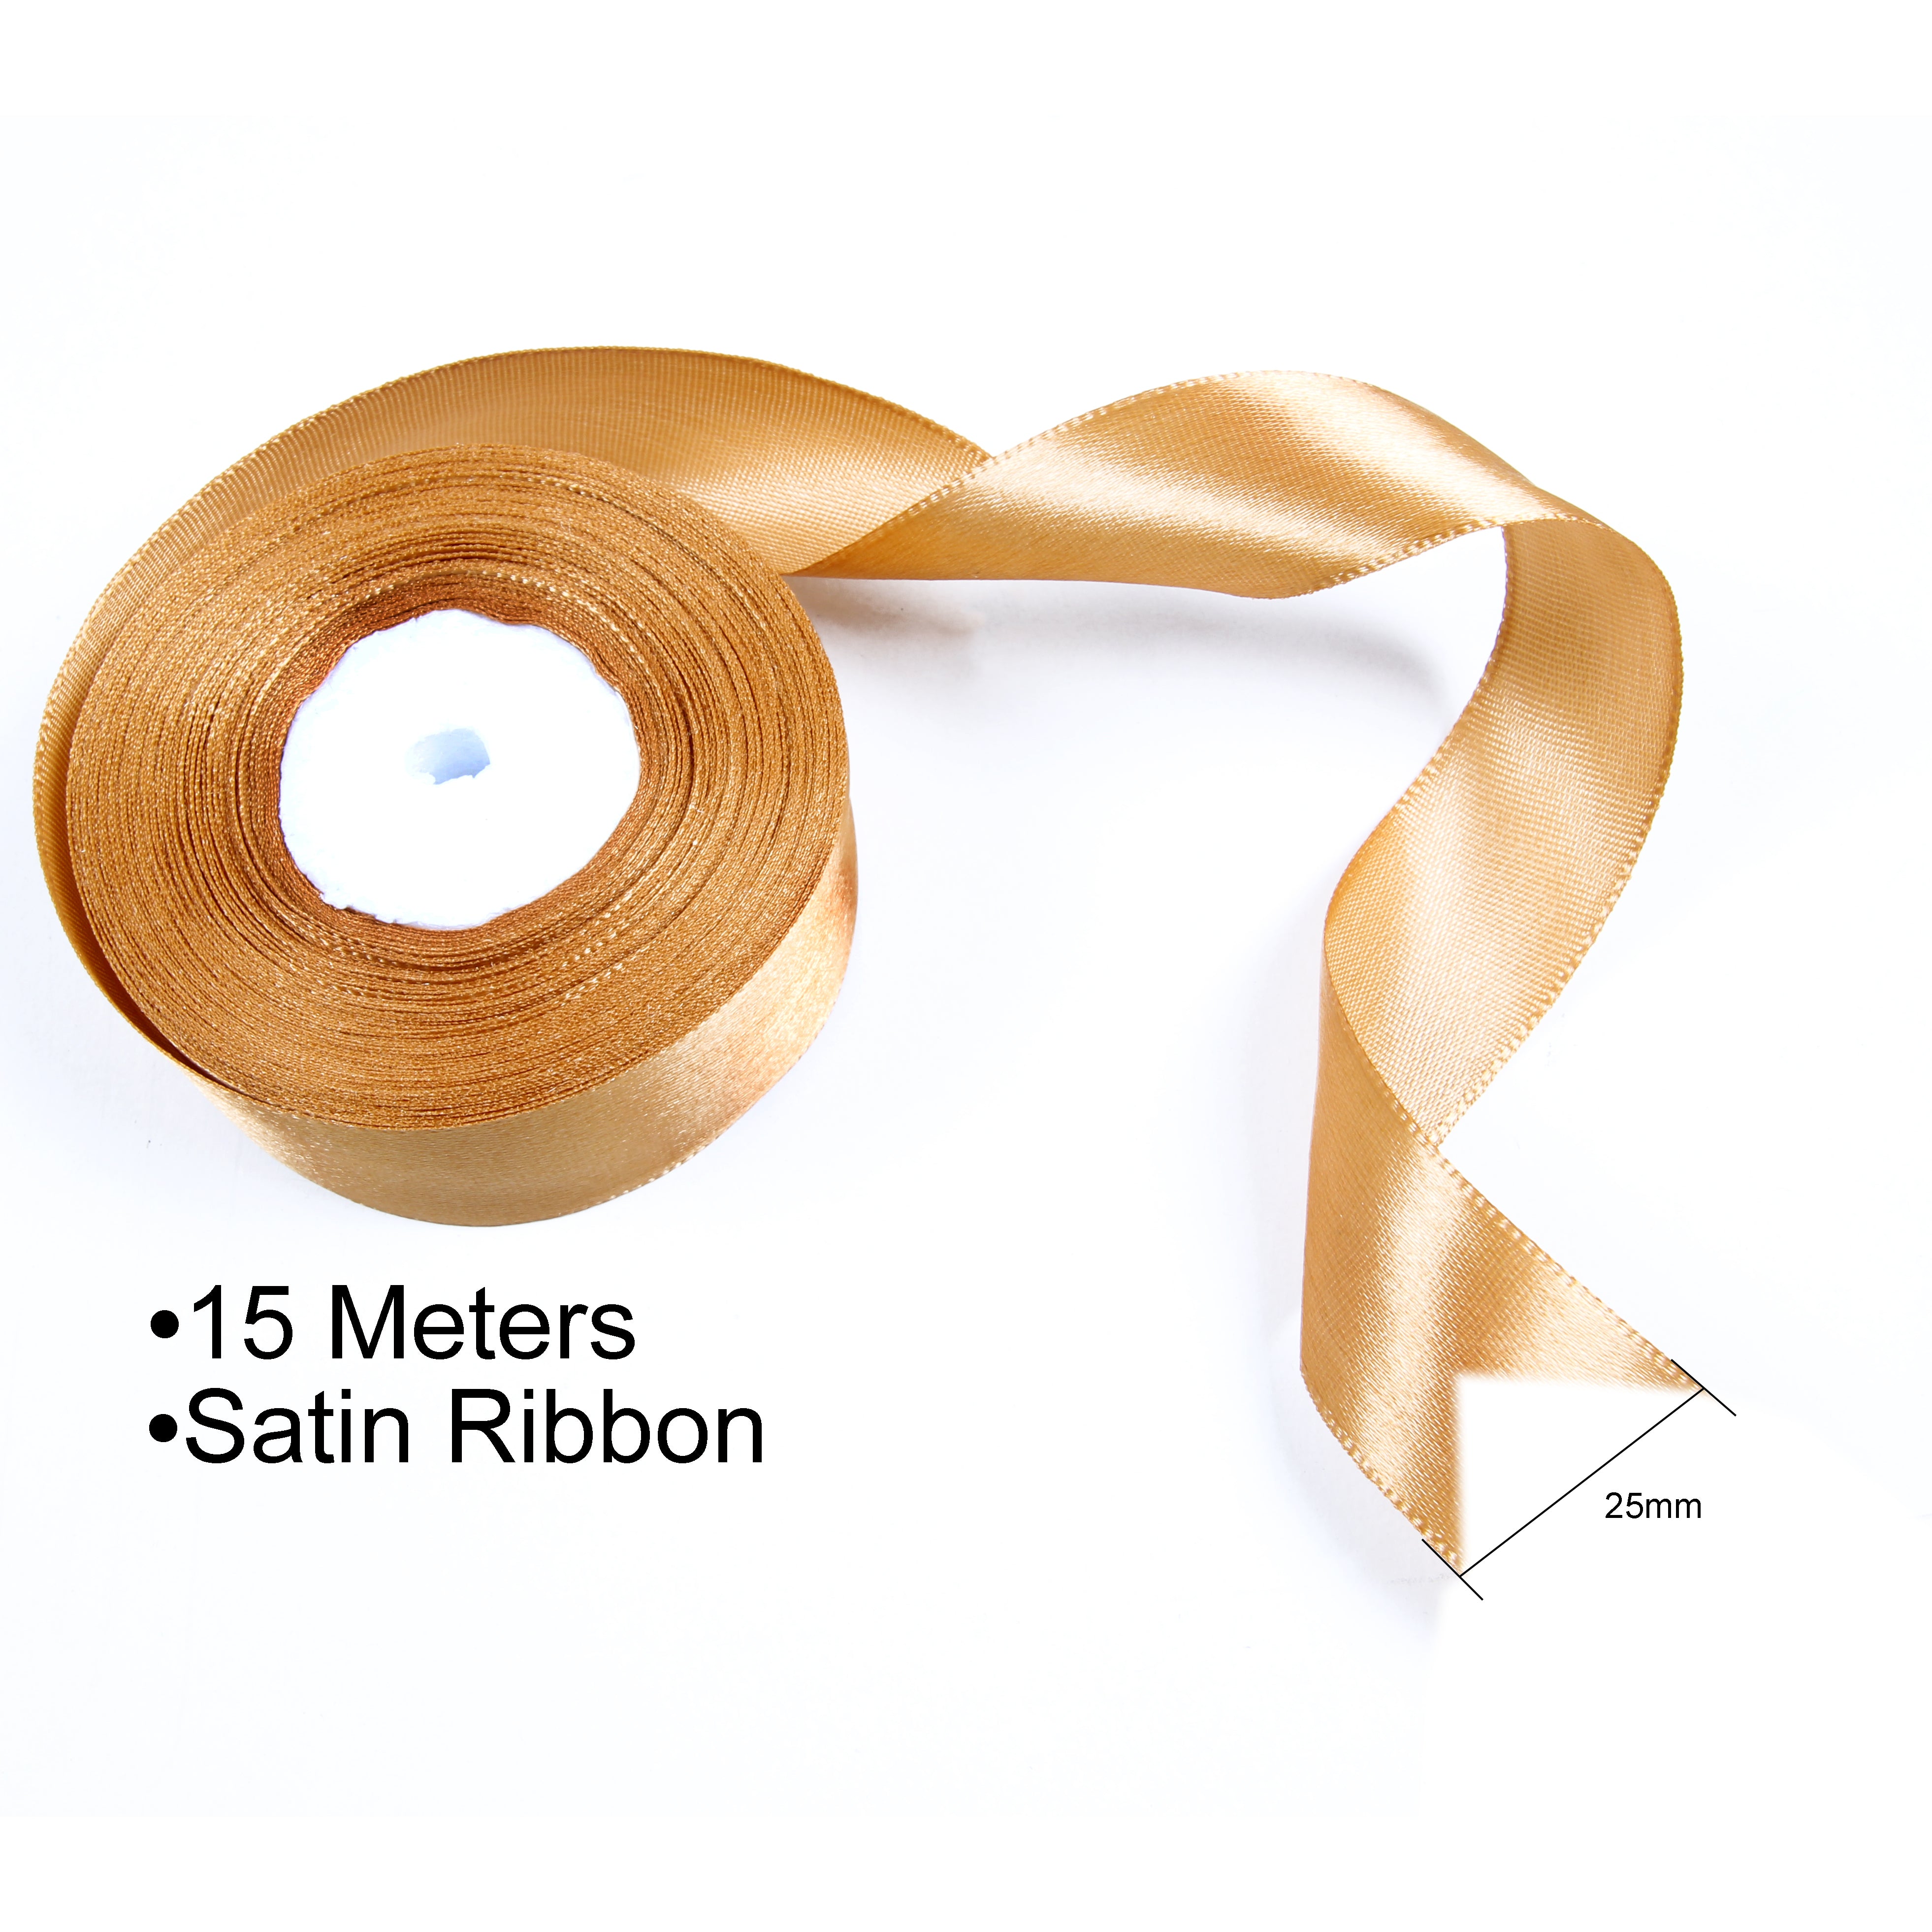 Satin Ribbon - 25mm Width - Brown -15 meter